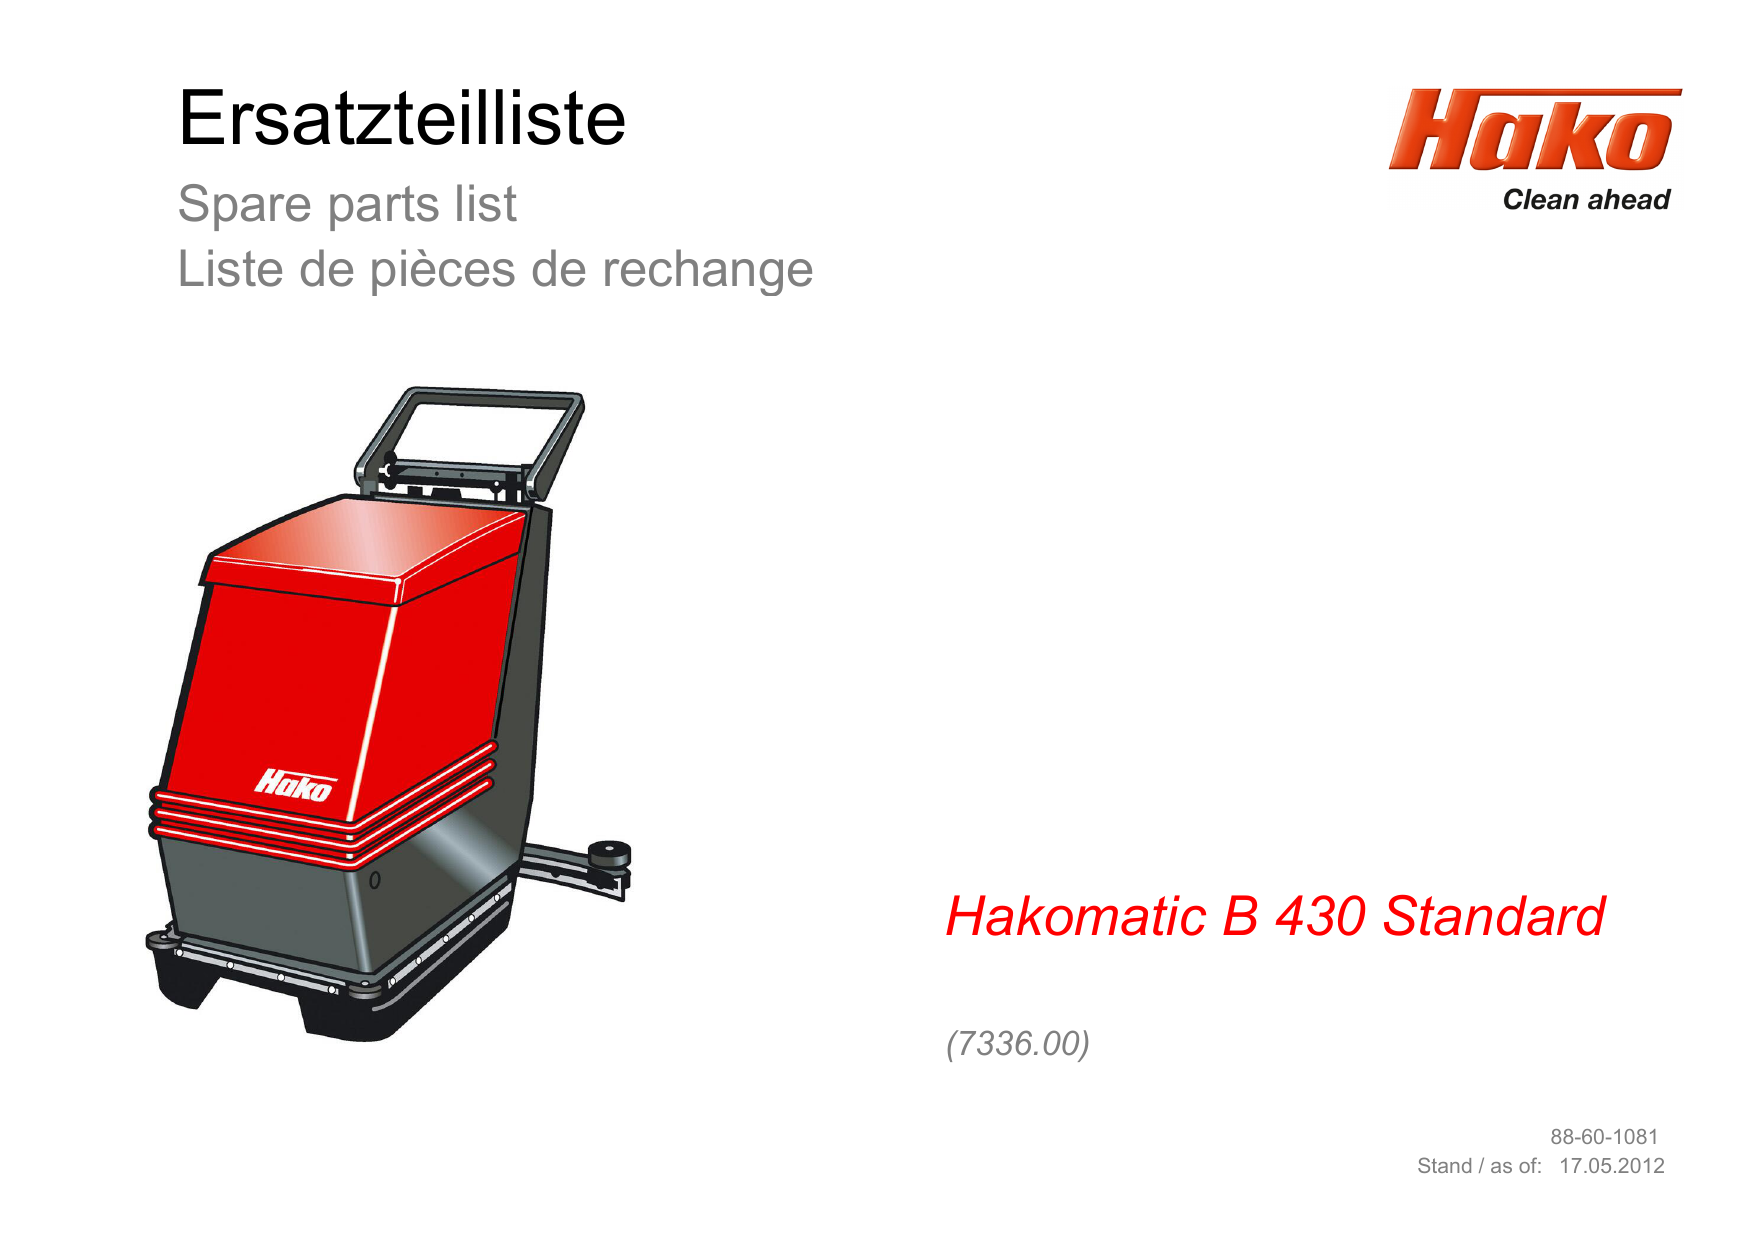 Ablassschlauch für Hako Hakomatic B 45-430 Ablaufschlauch Entleerungsschlauch 